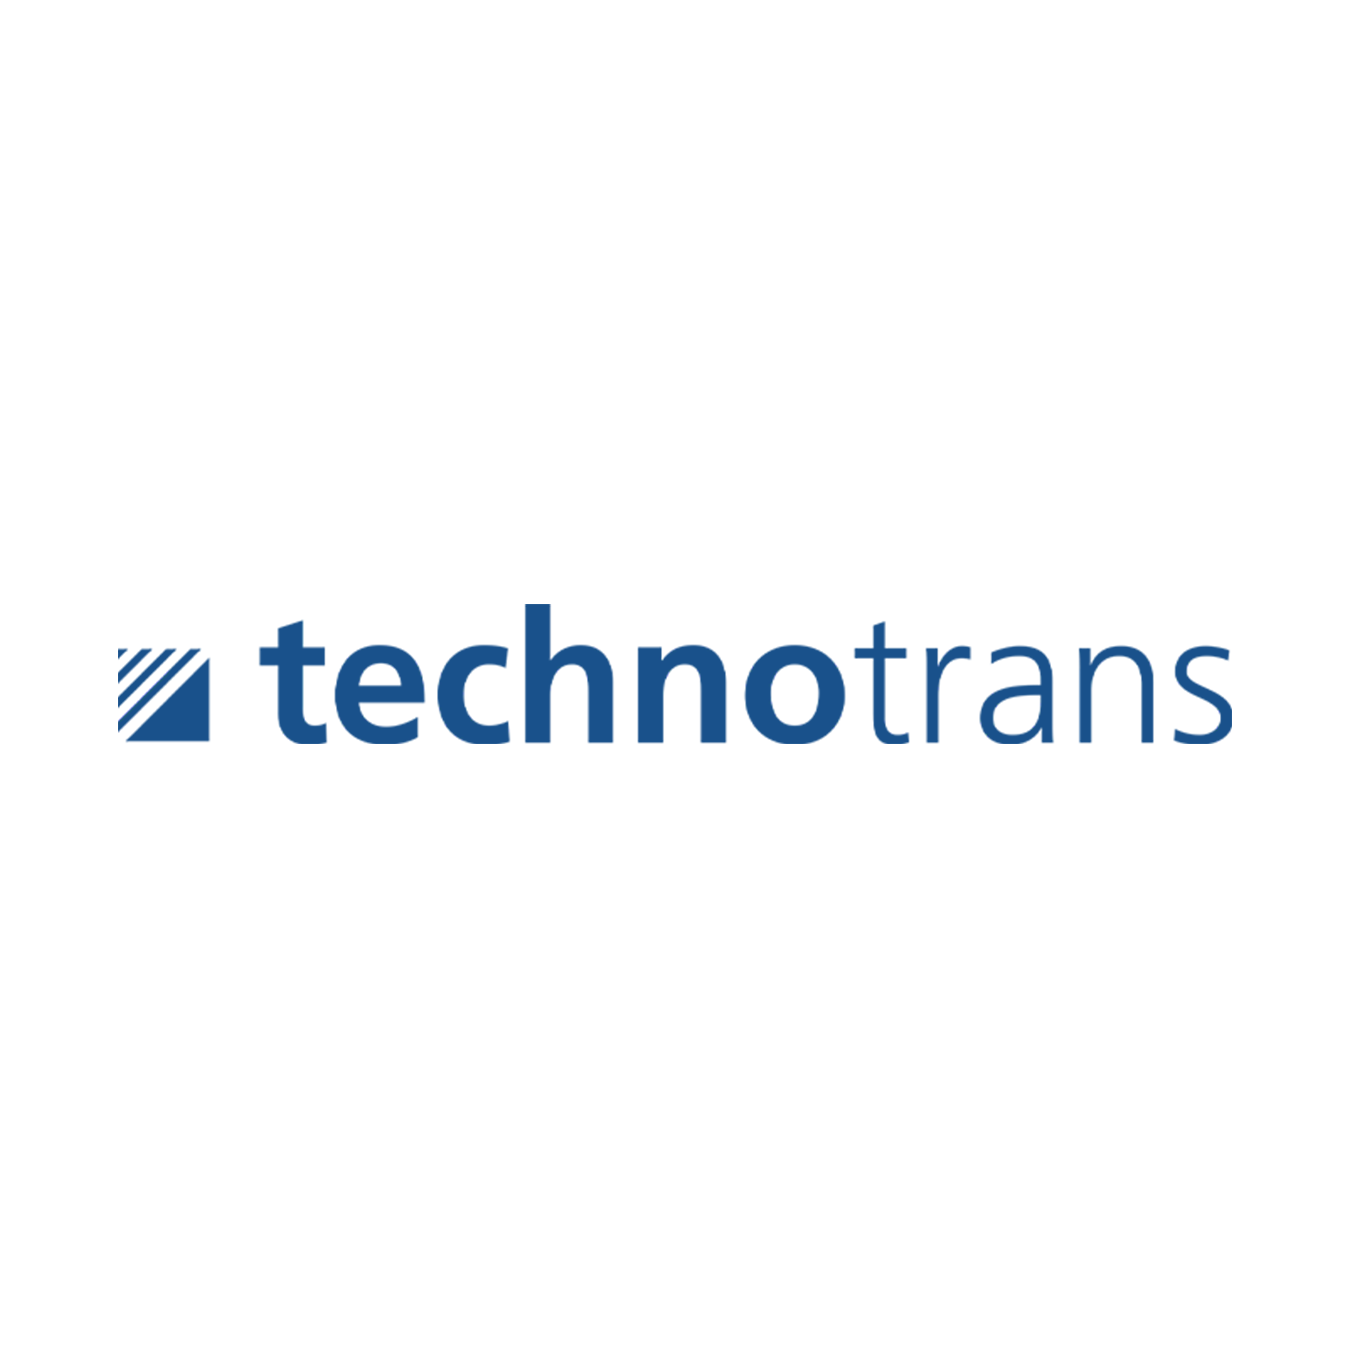 Ооо технотранс. Technotrans. НПФ Технотранс логотип. Фильтр Технотранс.